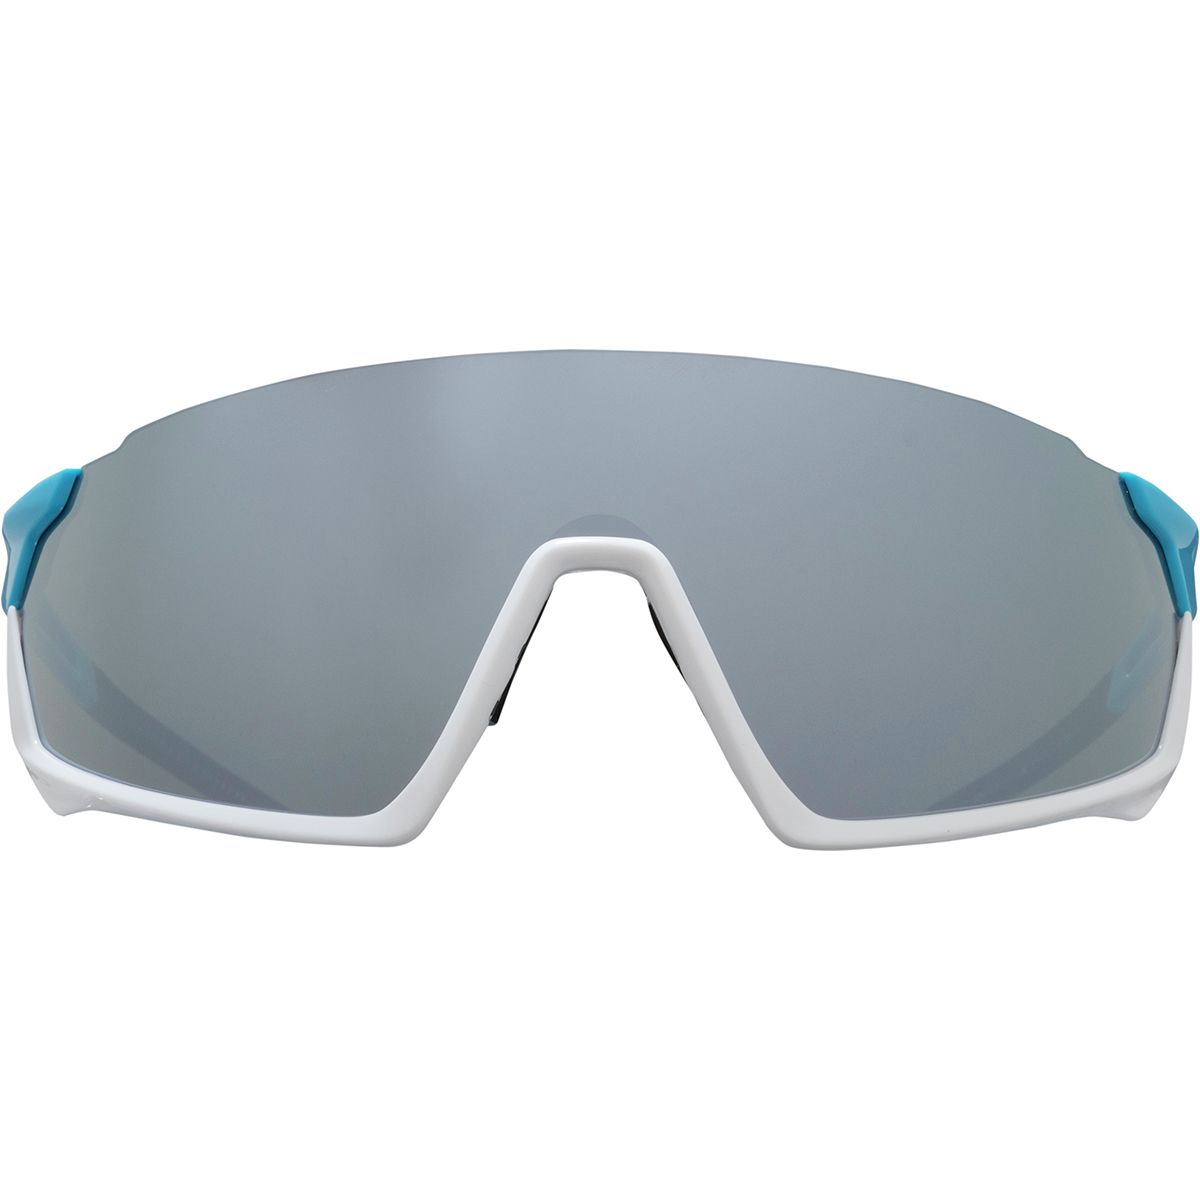 Roka GP-1 Sunglasses | Backcountry.com